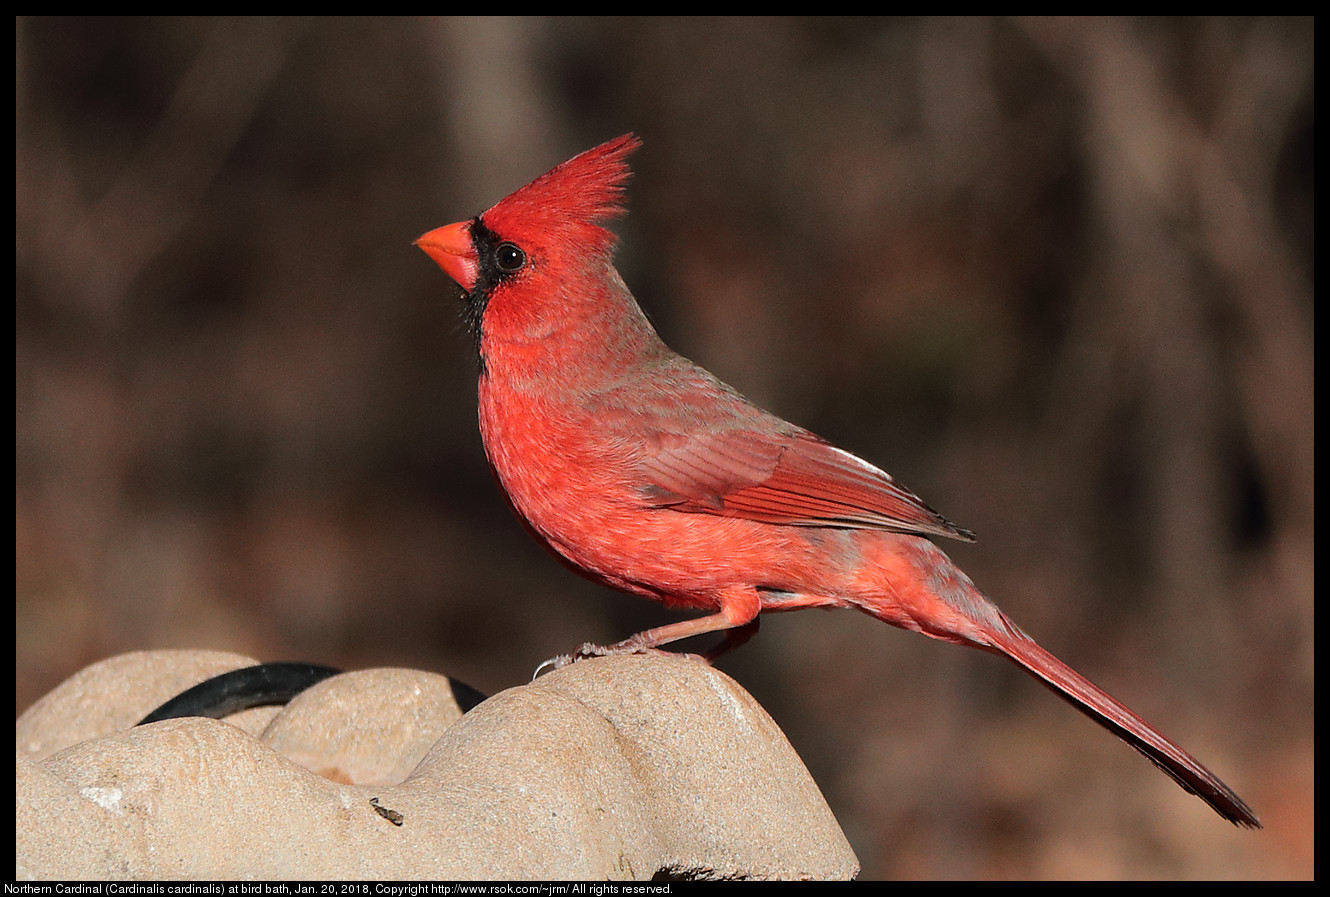 Northern Cardinal (Cardinalis cardinalis) at bird bath, Jan. 20, 2018